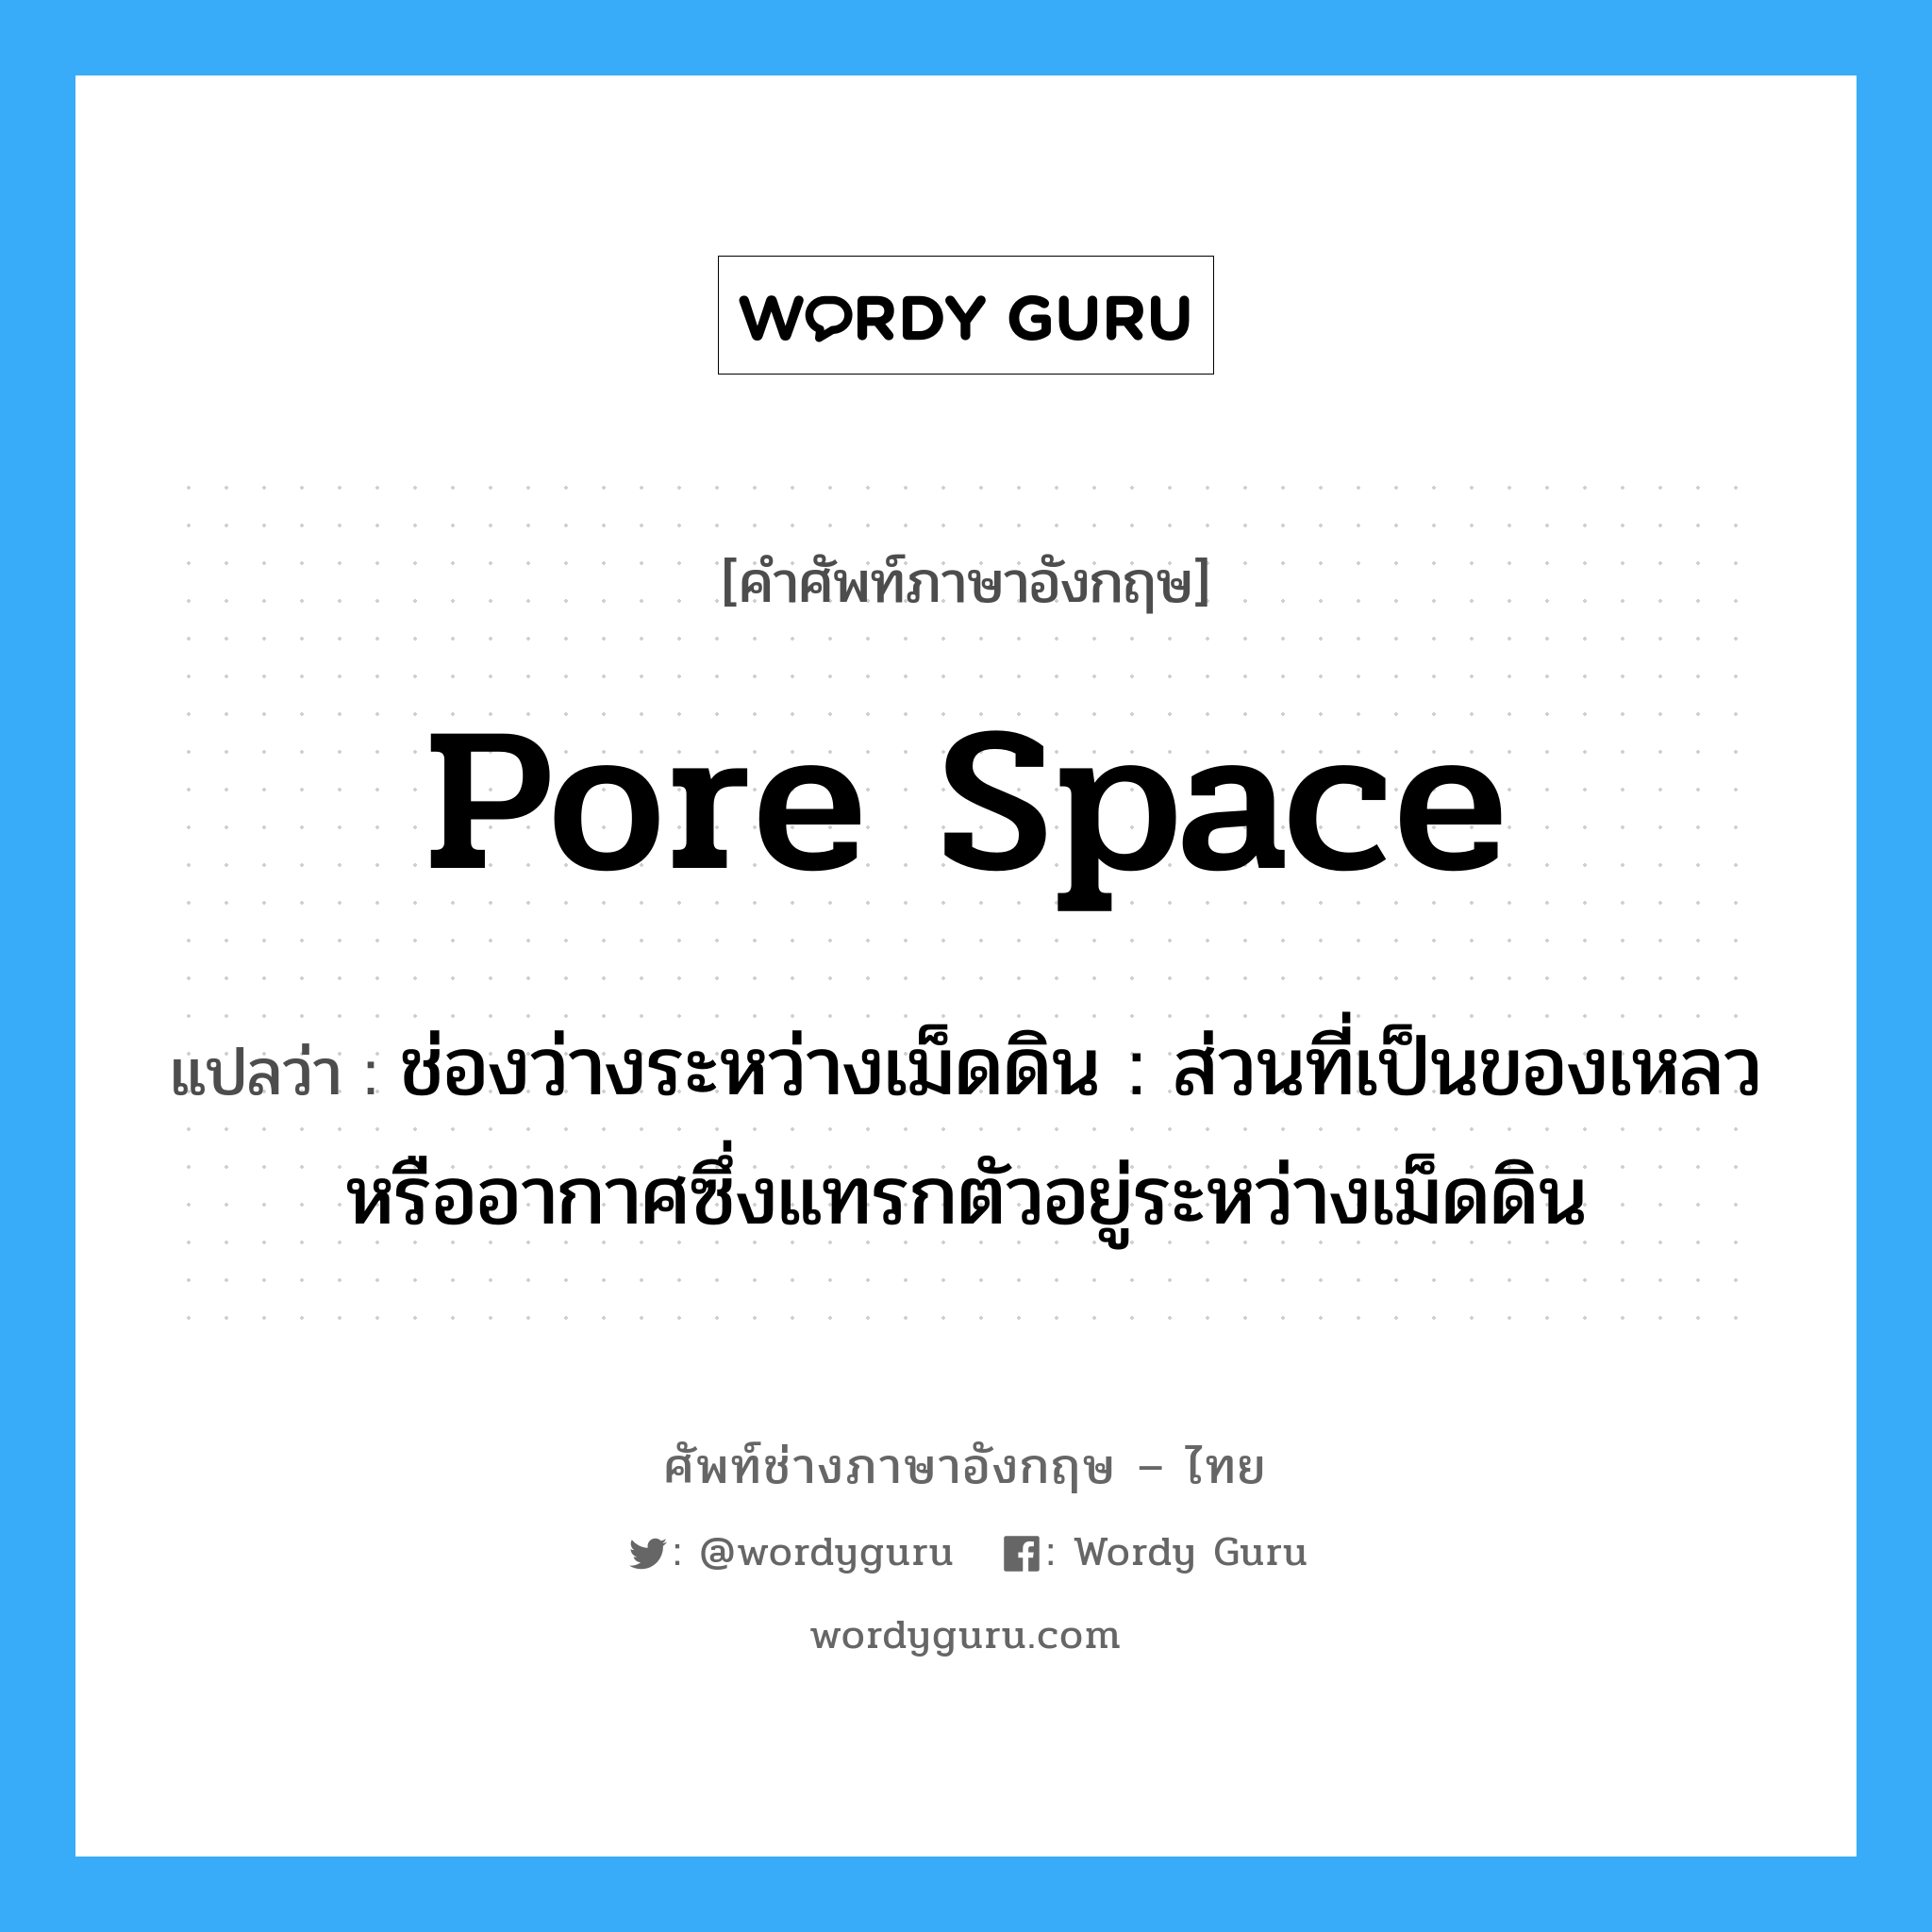 pore space แปลว่า?, คำศัพท์ช่างภาษาอังกฤษ - ไทย pore space คำศัพท์ภาษาอังกฤษ pore space แปลว่า ช่องว่างระหว่างเม็ดดิน : ส่วนที่เป็นของเหลวหรืออากาศซึ่งแทรกตัวอยู่ระหว่างเม็ดดิน